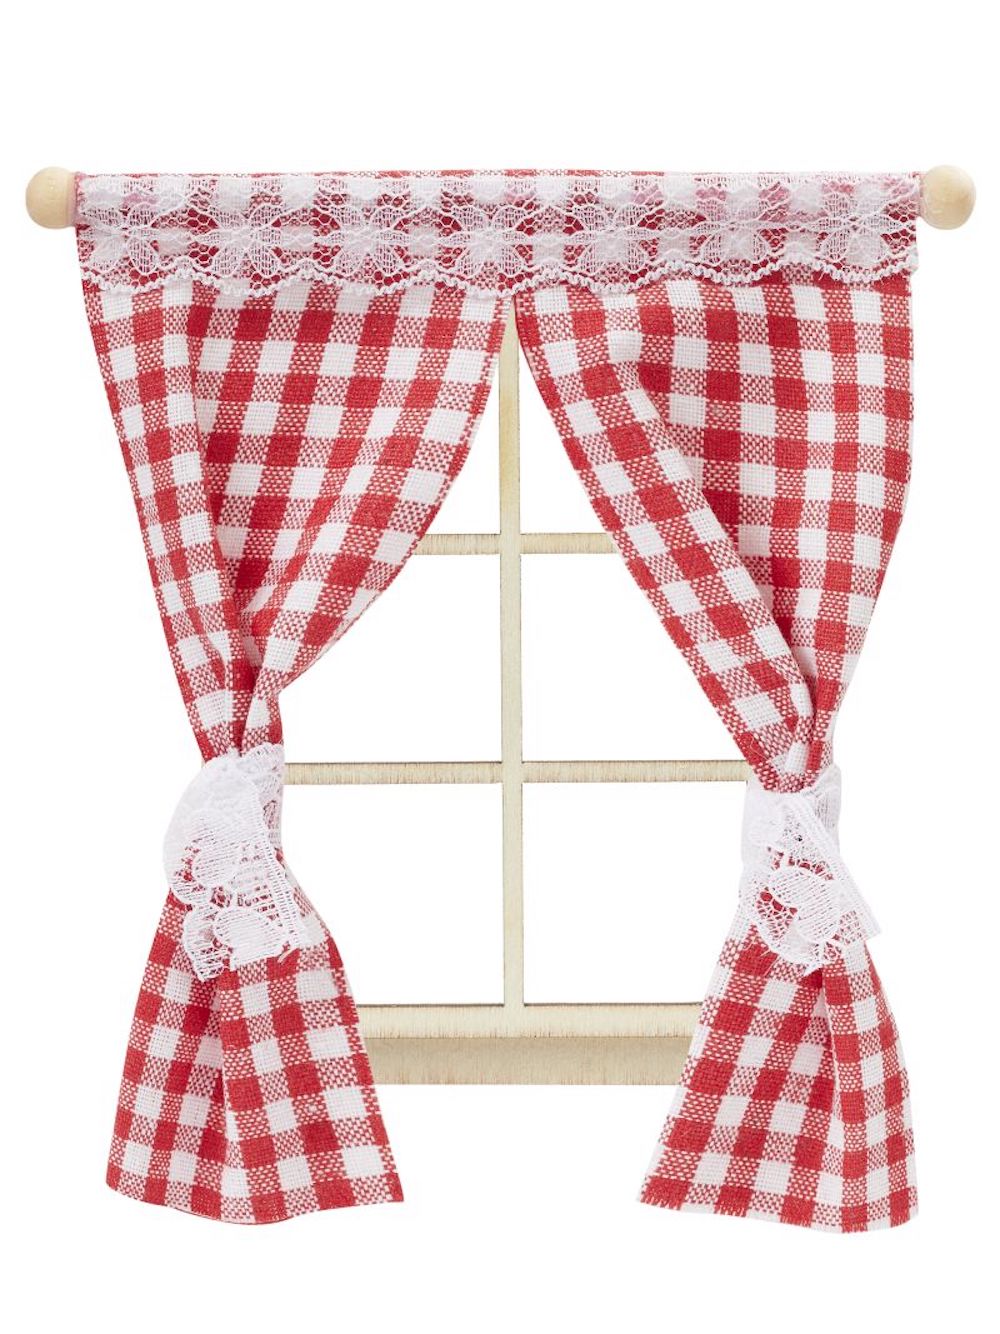 Miniatur Vorhang rot-weiß, 11,5cm x 12cm 